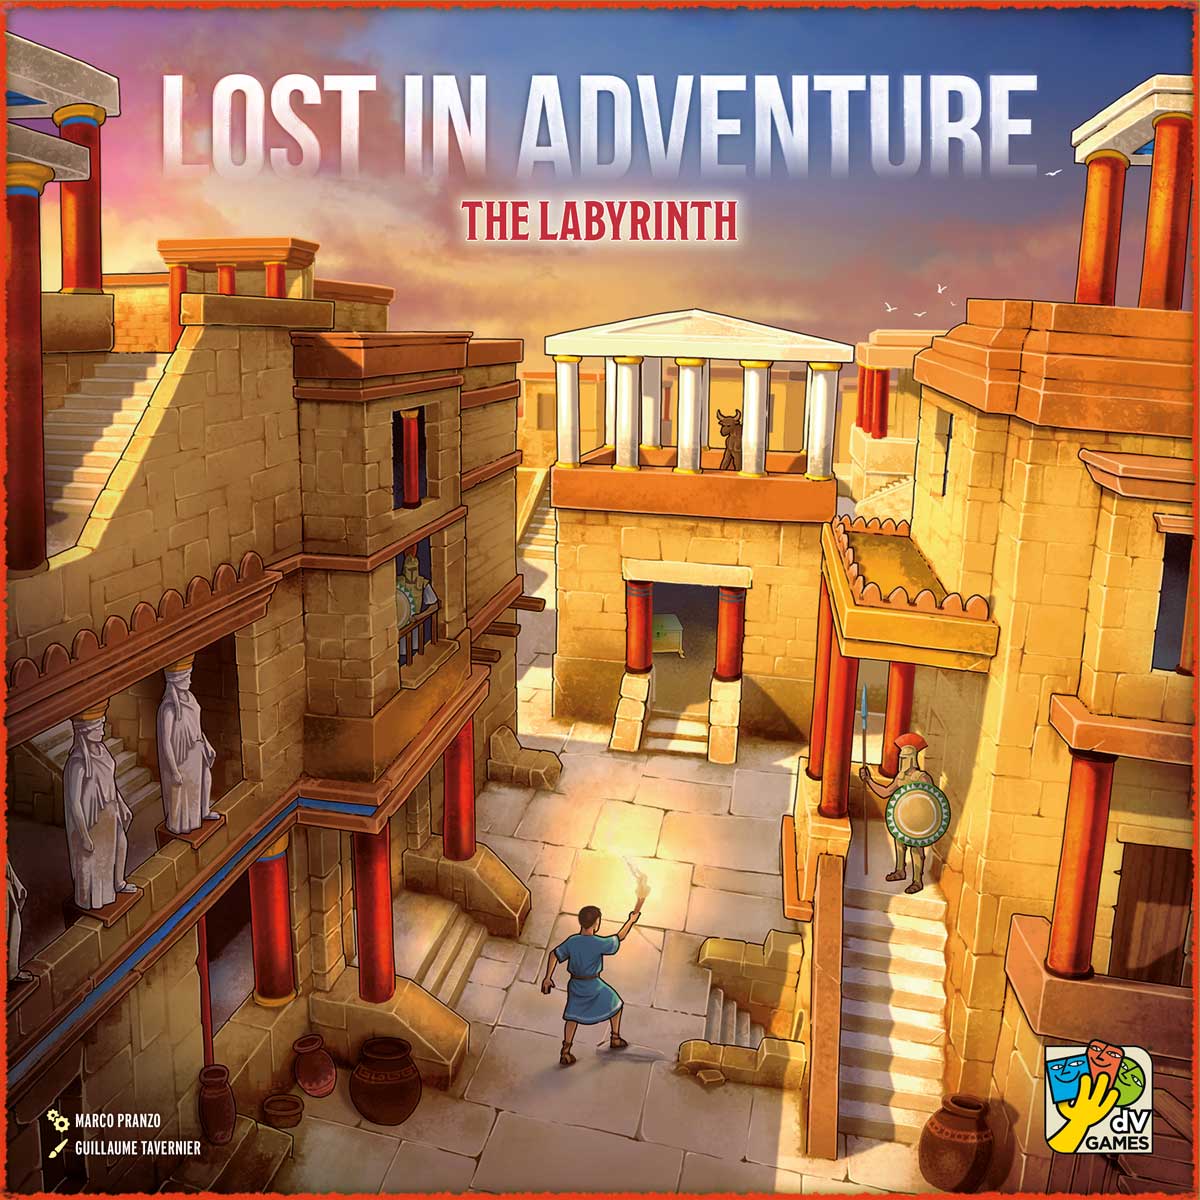 okładka gry Lost In Adventure - The Labirynth zapowiedzianej przez wydawnictwo DV Games